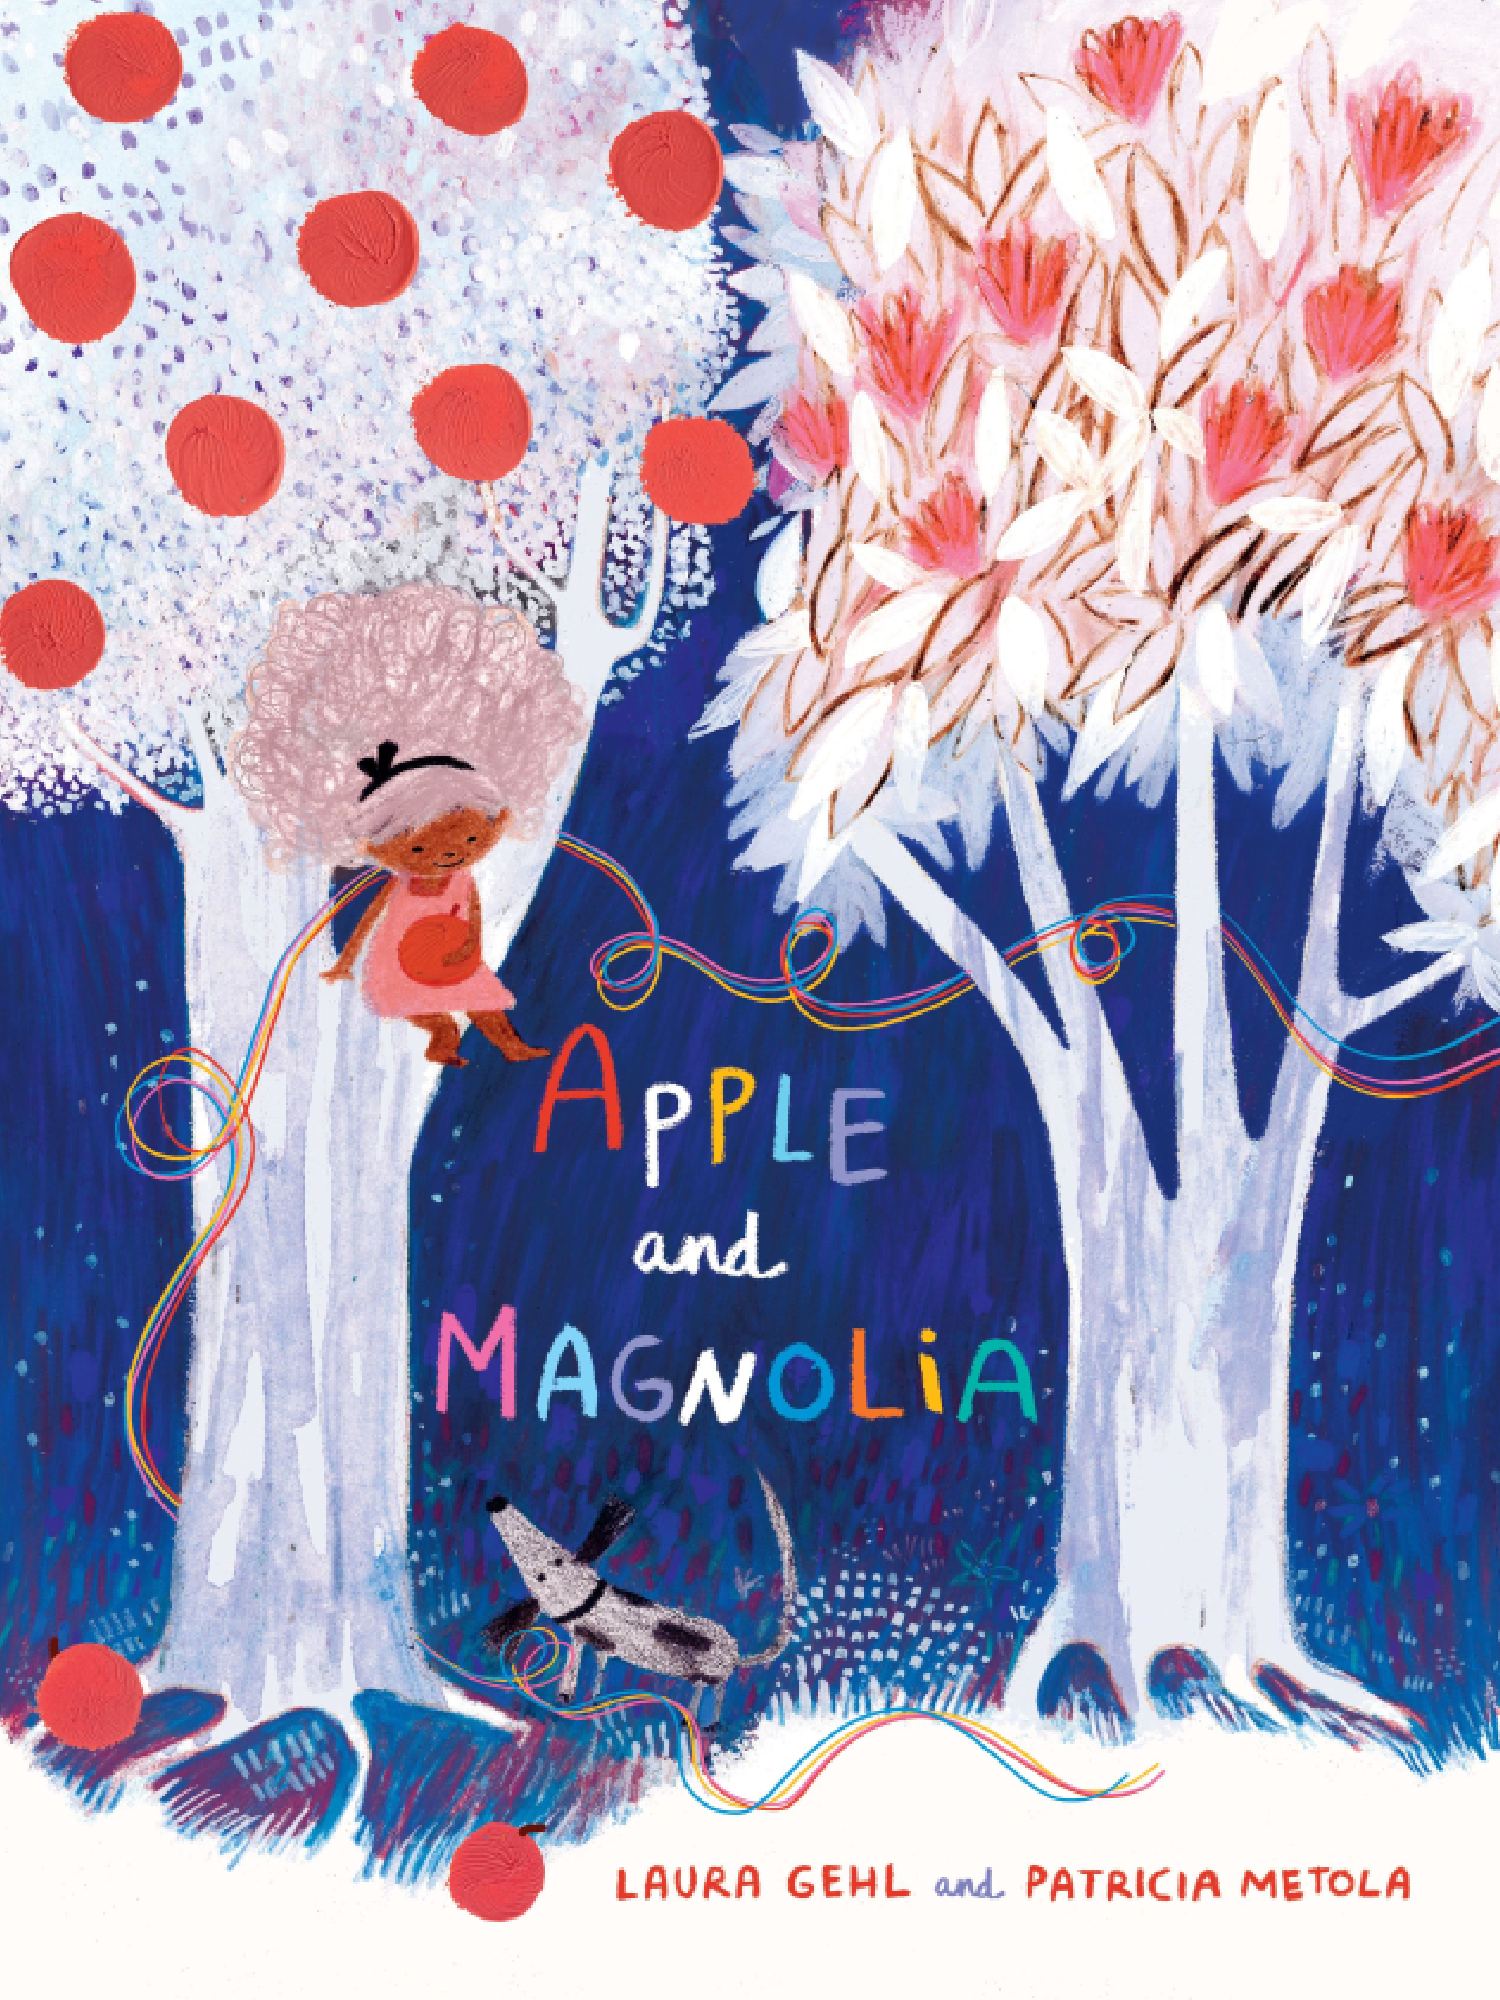 Maypole LaneBook - Apple And Magnolia - Maypole LaneMaypole LaneBook - Apple And Magnolia